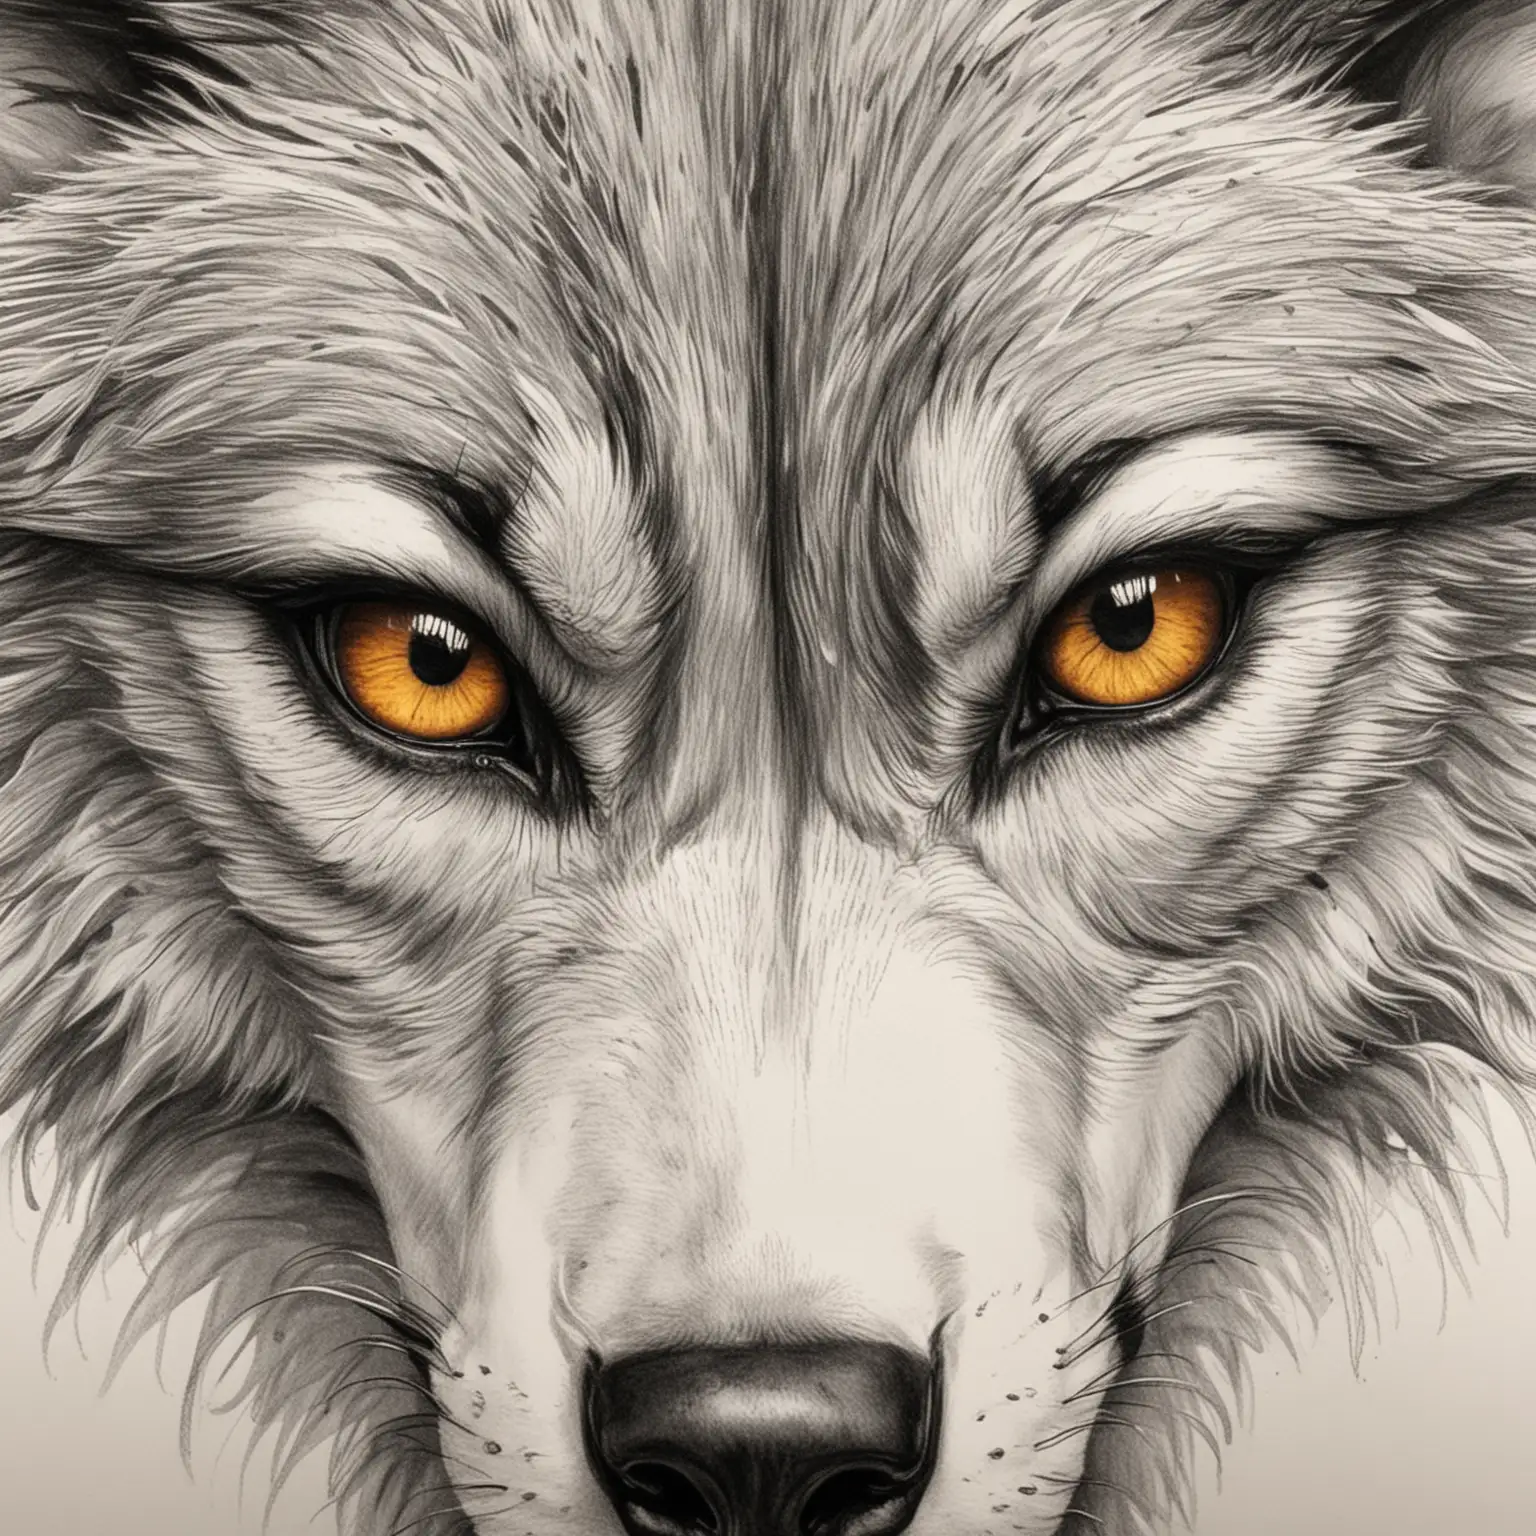 画出一个很凶的狼的眼睛
